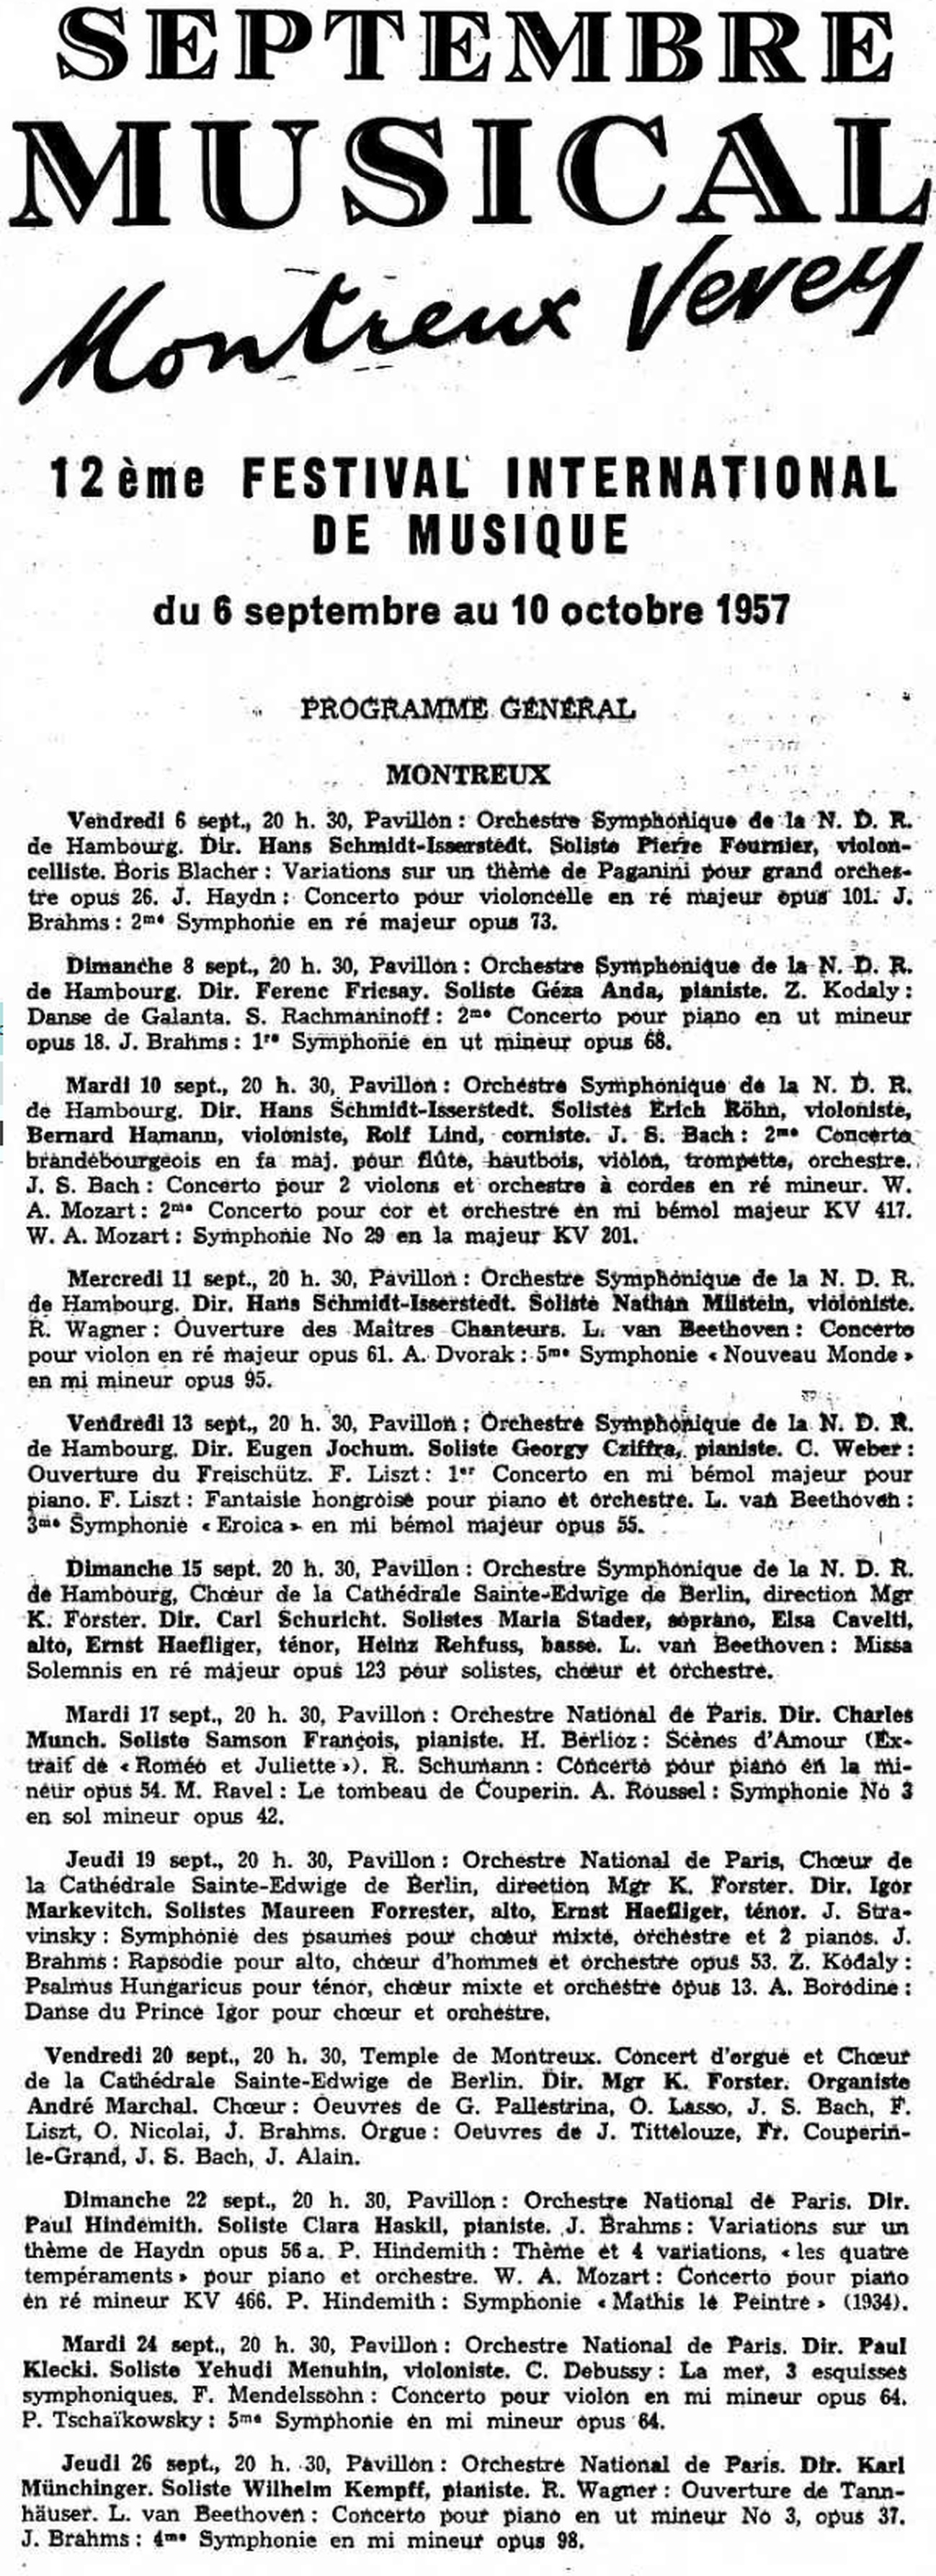 Programme général des concerts symphoniques, cité de la Gazette de Lausanne du 5 septembre 1957, page 4